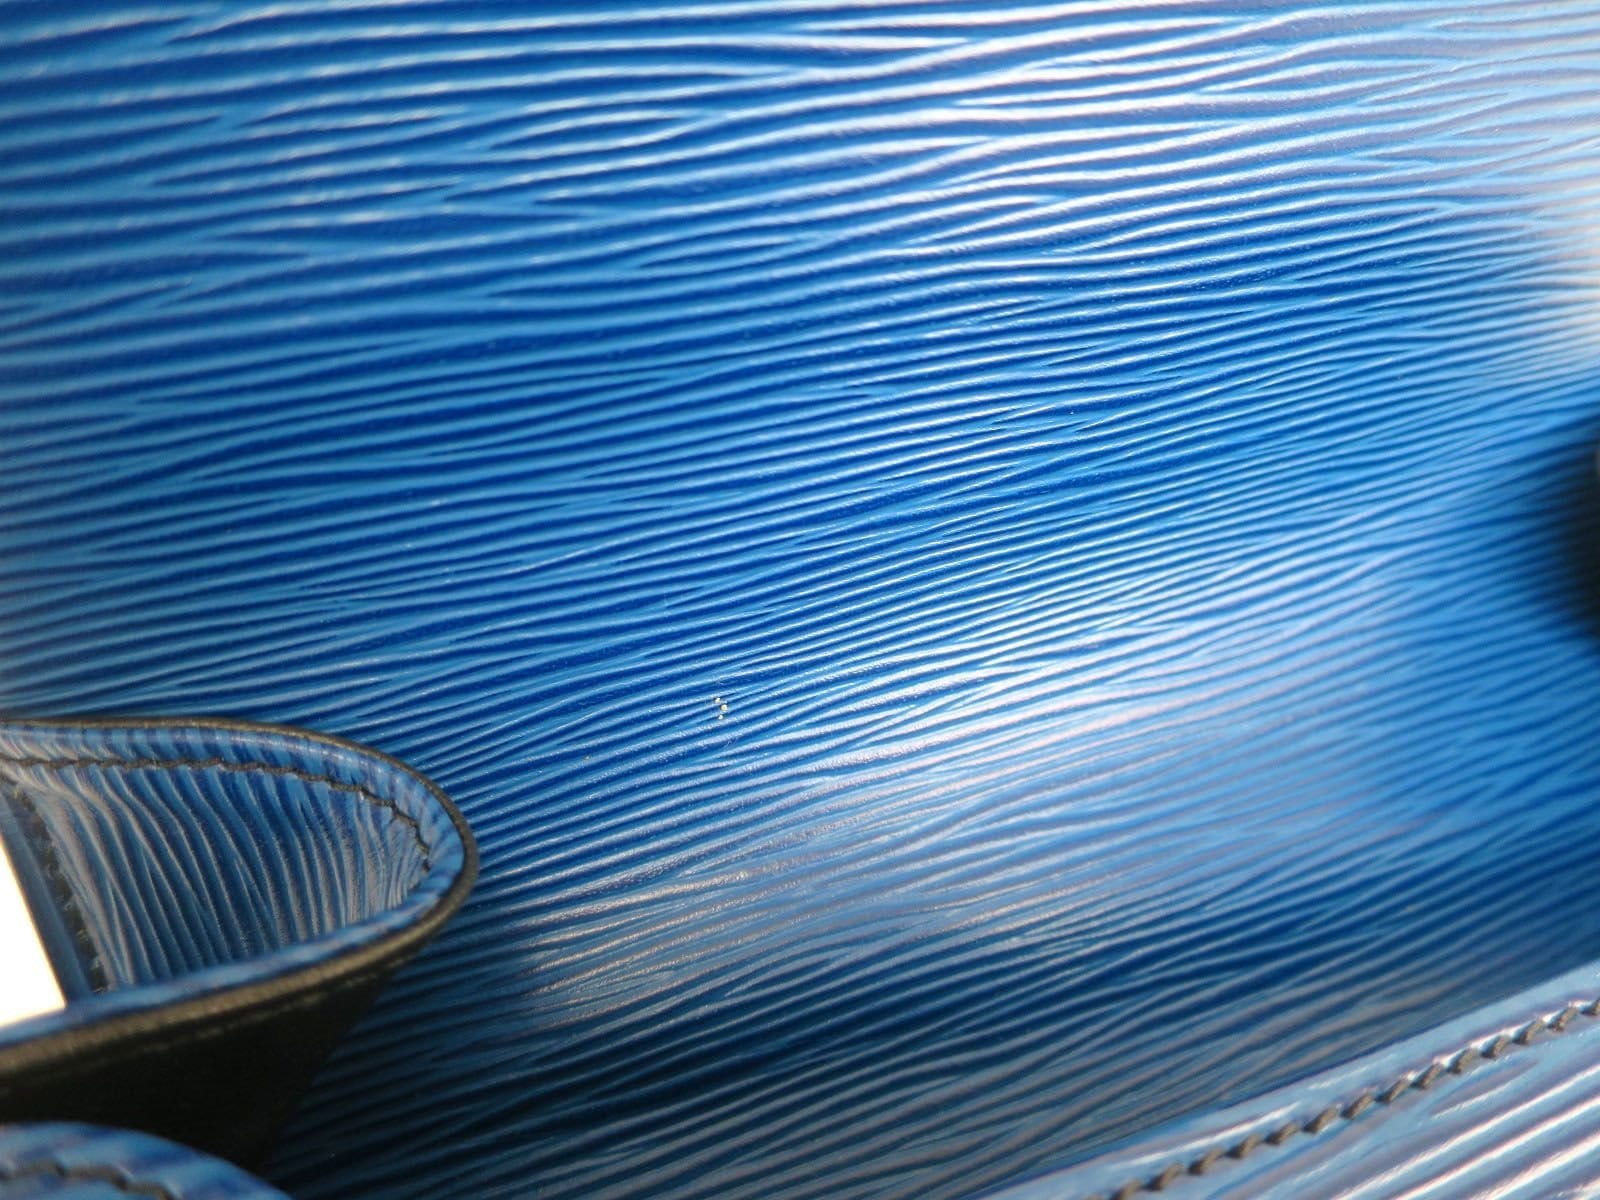 Louis Vuitton Randonnee GM Toledo Blue Epi Leather Shoulder Bag